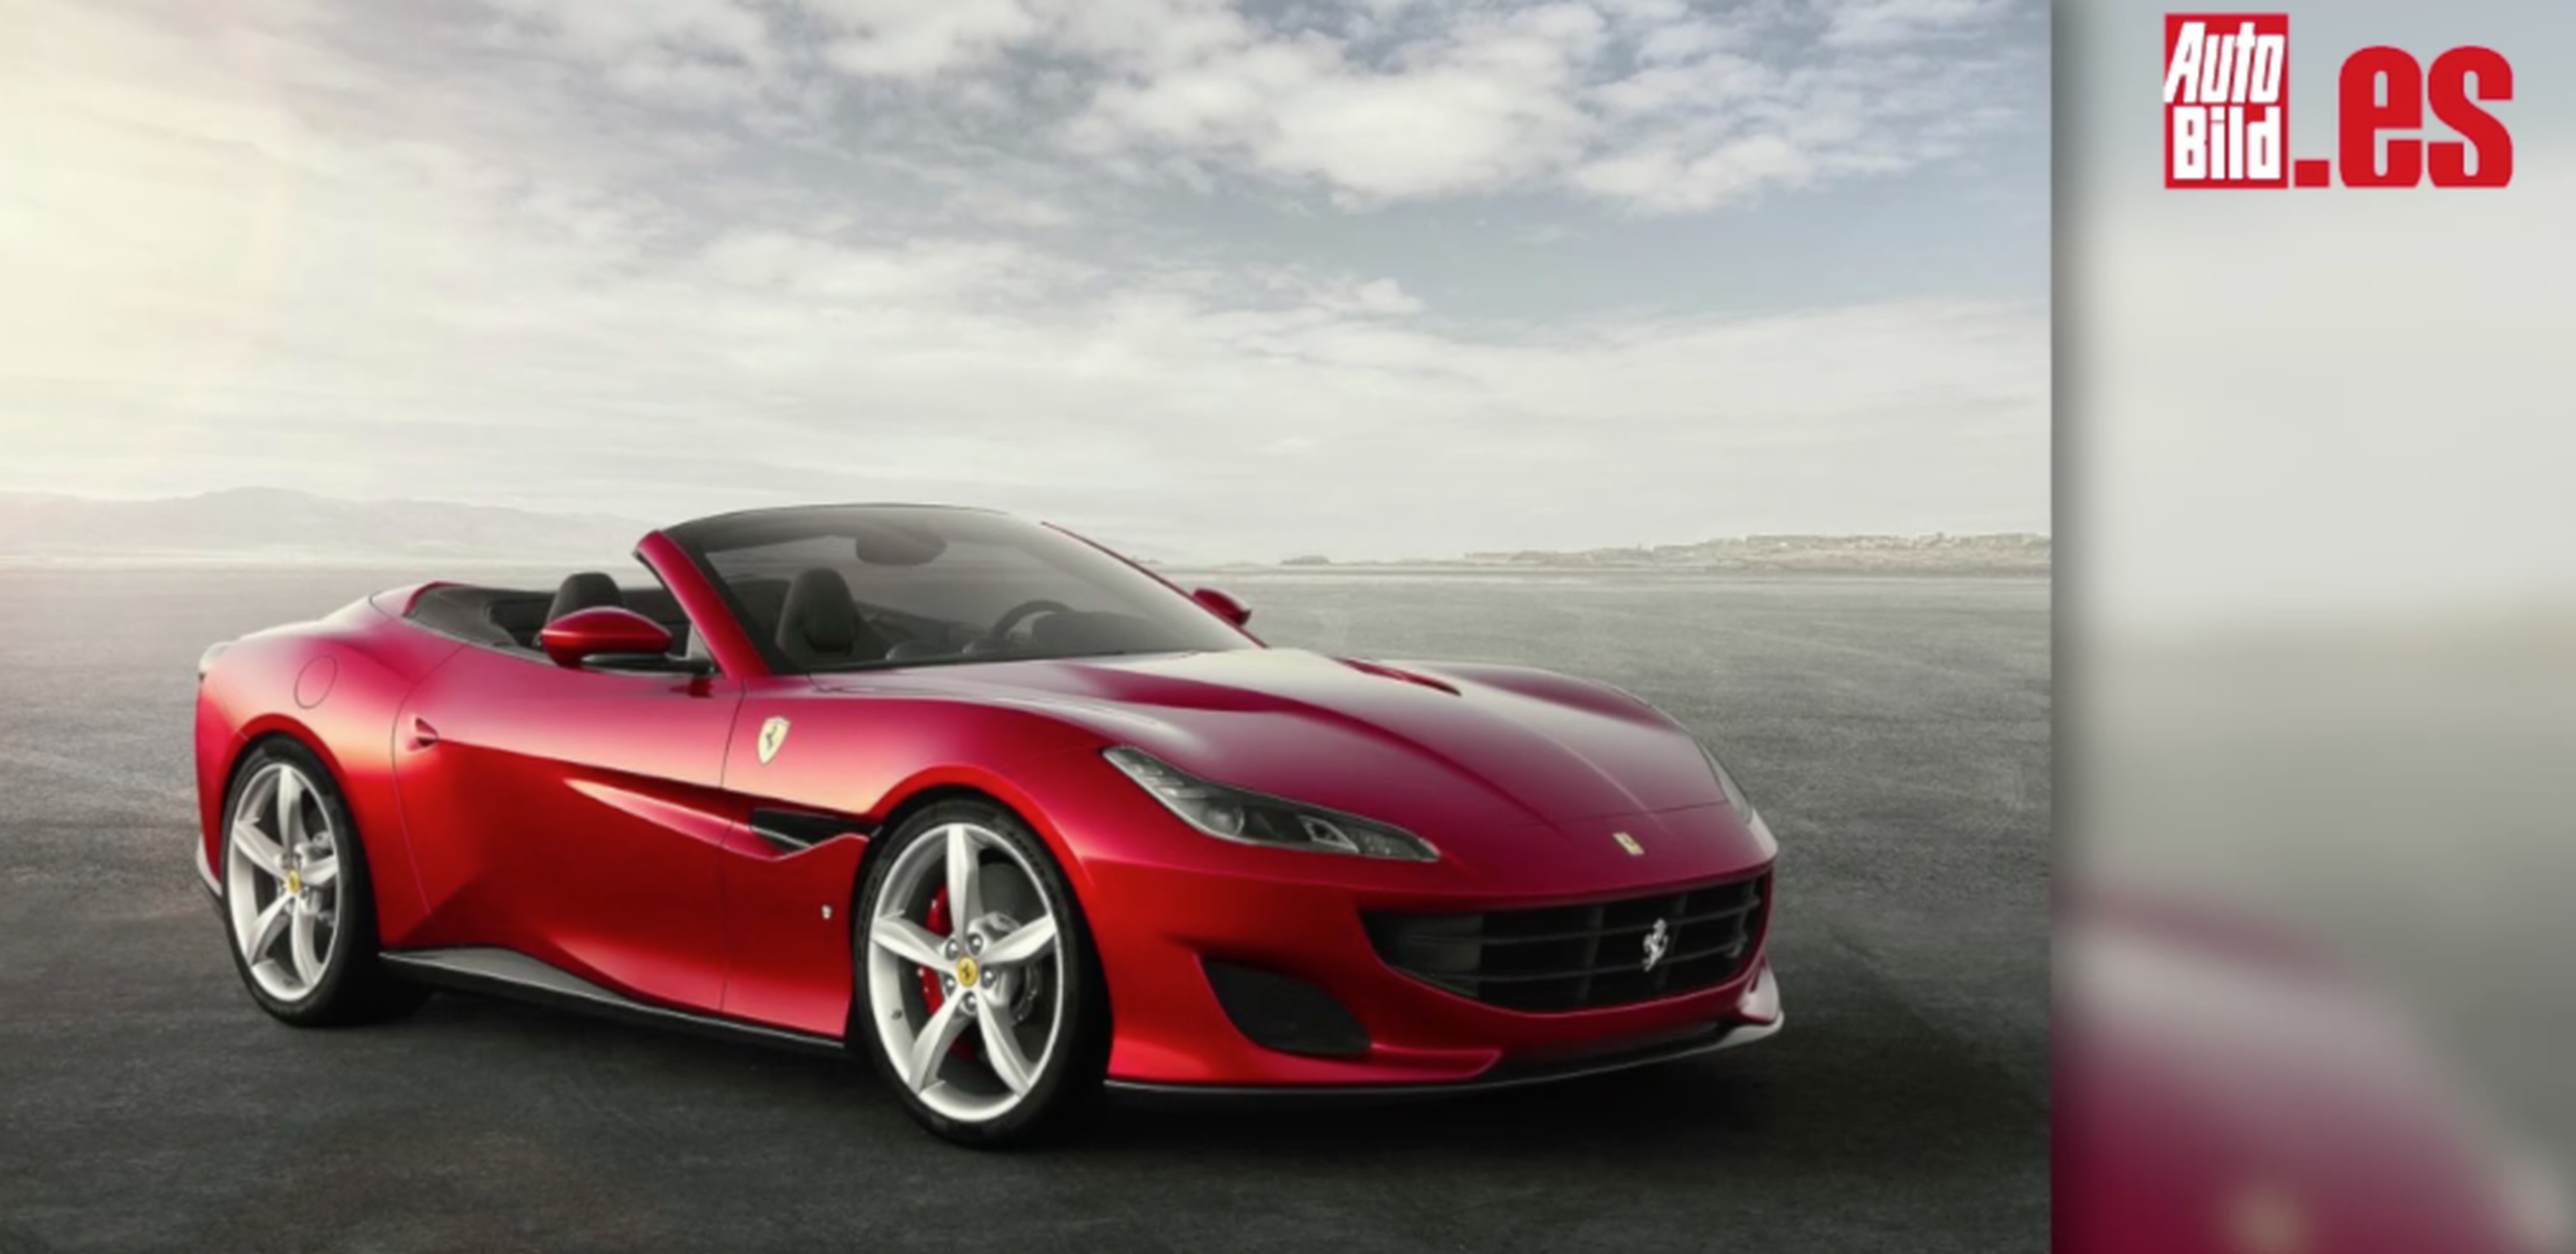 VÍDEO: Llega el nuevo Ferrari Portofino, ¡míralo en detalle!